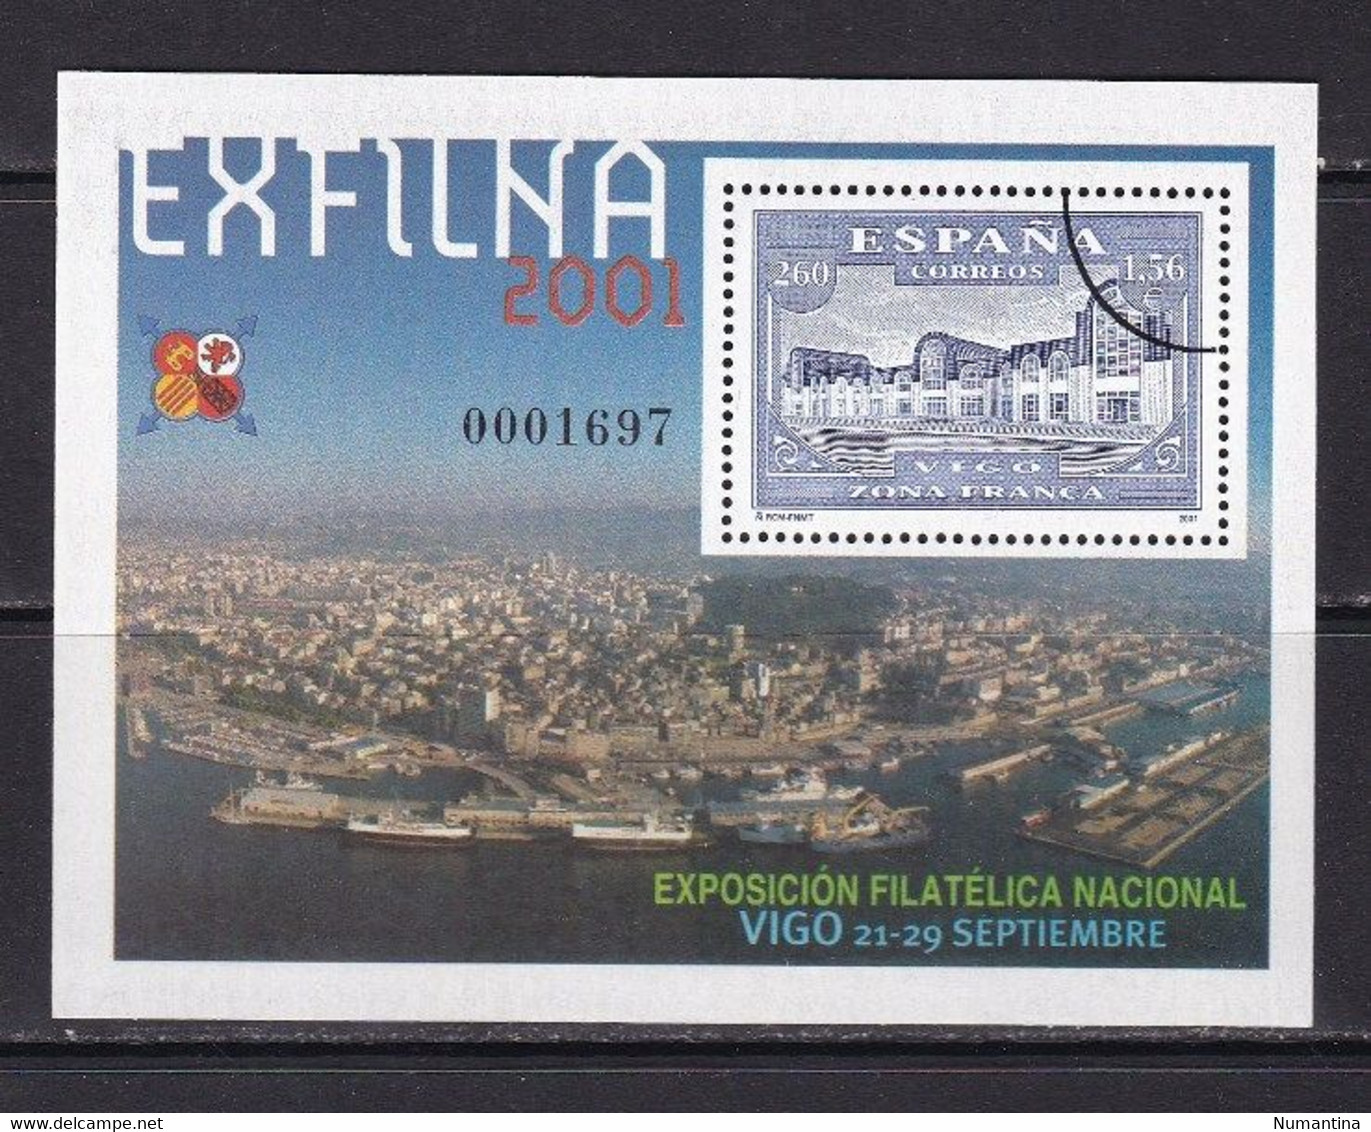 ESPAÑA - 2001 - Edifil 3816M - MUESTRA - Exfilna 2001 - Vigo - Valor Catalogo 24 € - Blocs & Hojas